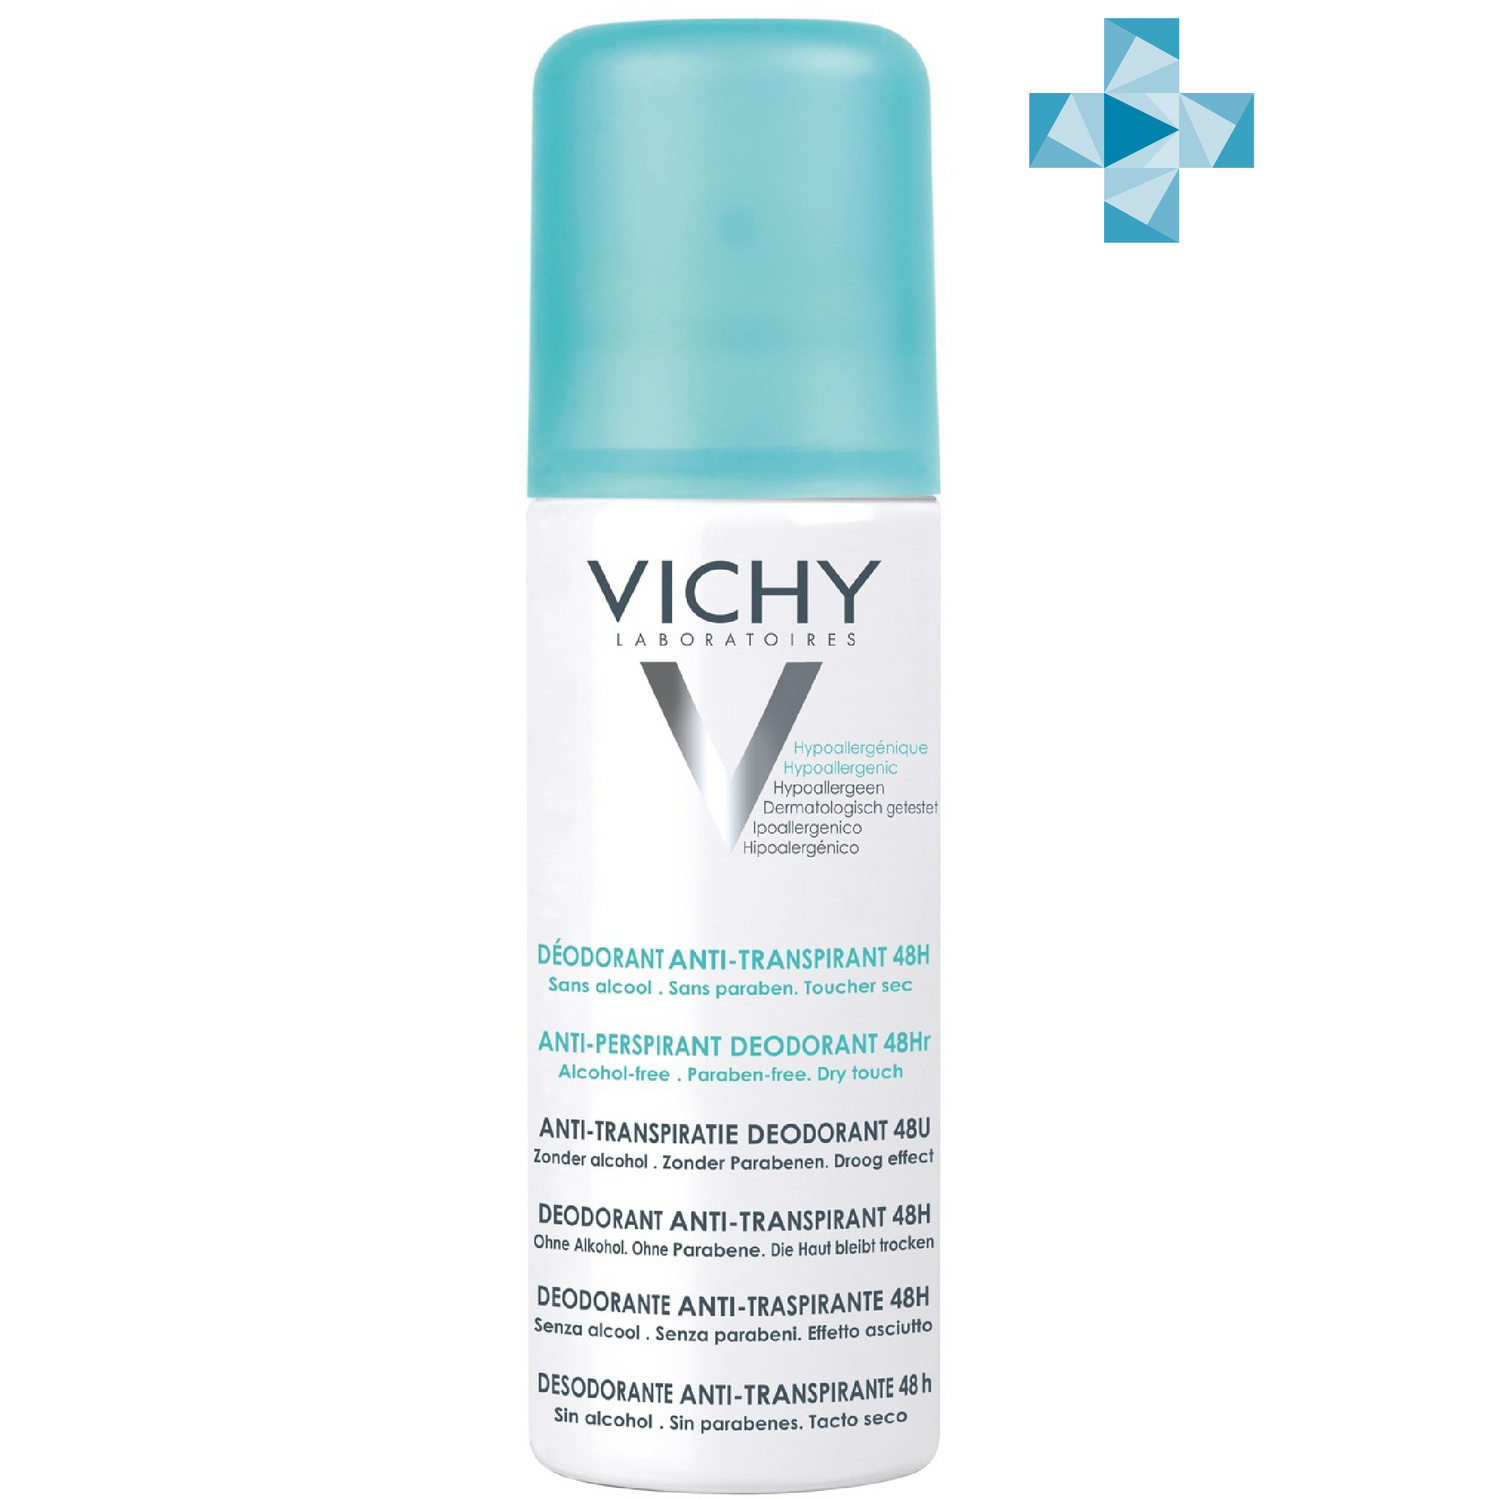 Vichy Дезодорант-аэрозоль против избыточного потоотделения 48 часов защиты, 125 мл (Vichy, Deodorant) дезодорант аэрозоль vichy 48h 125 мл